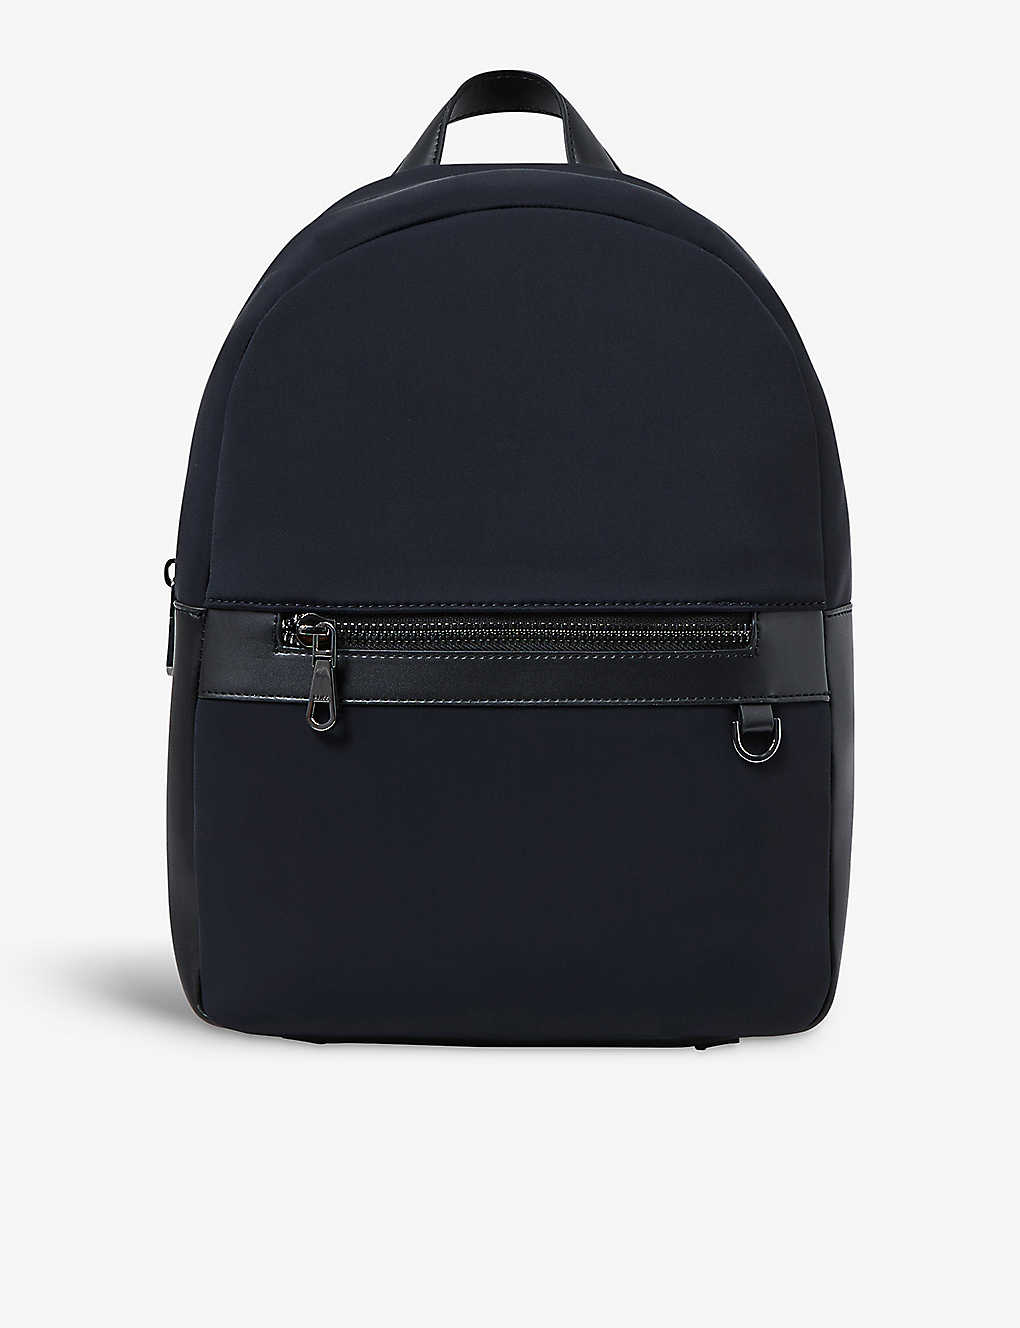 Shop Reiss Men's Dark Navy Drew Top-handle Nylon Backpack